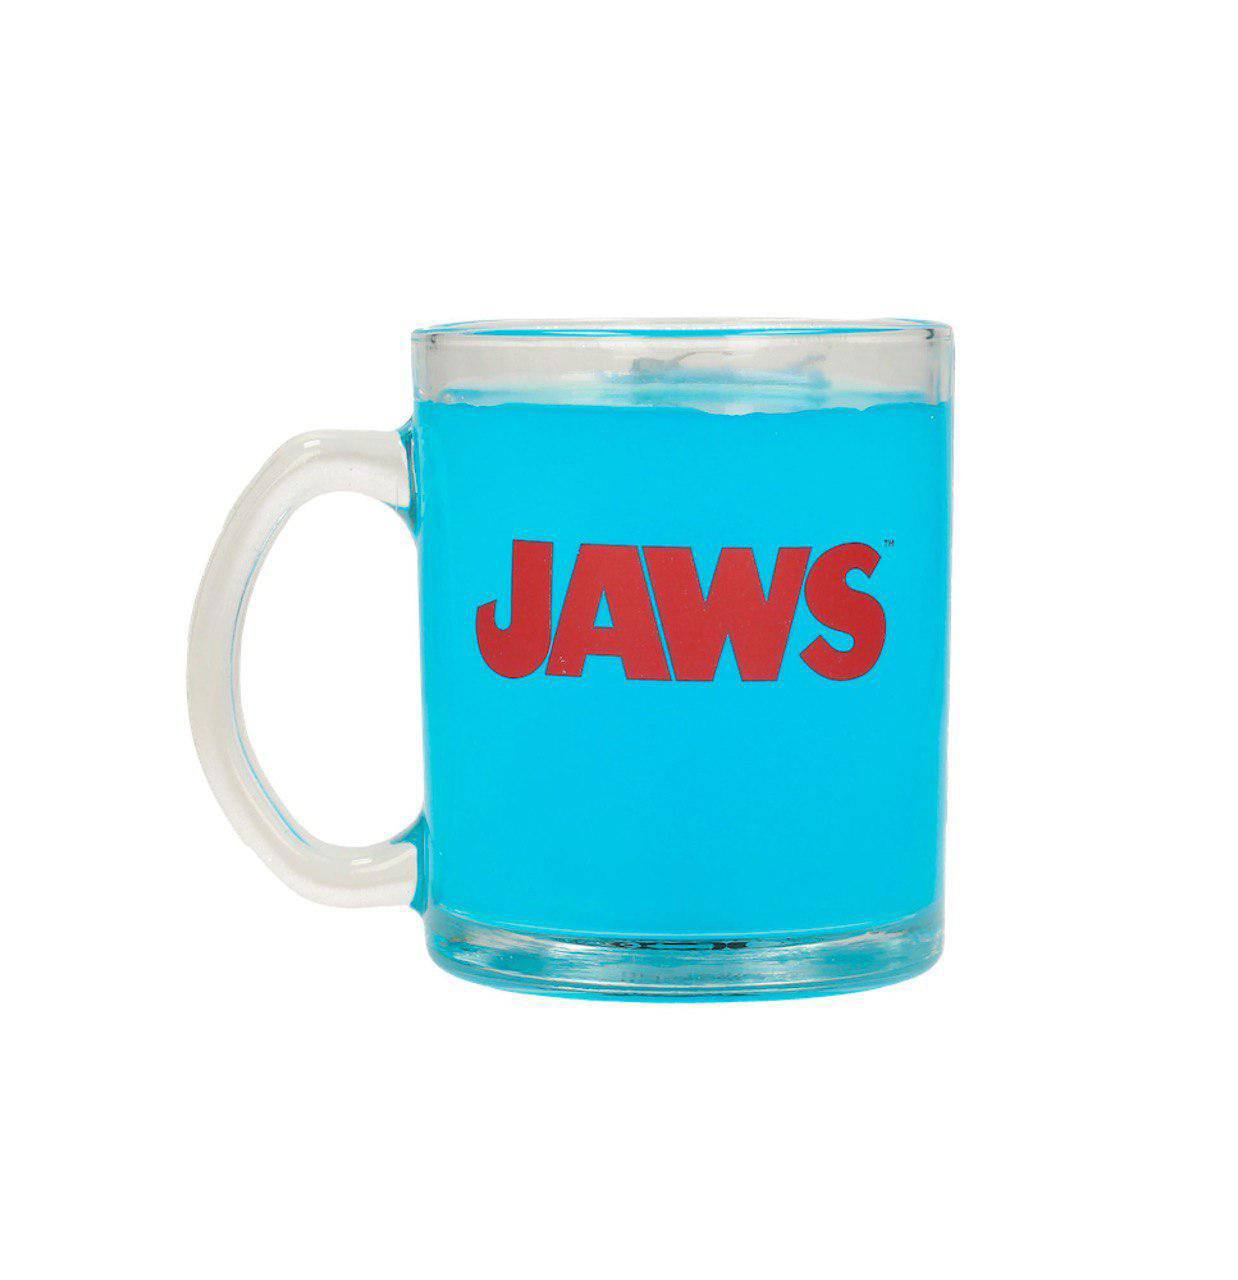 Jaws - Mug Poster - darkling.be